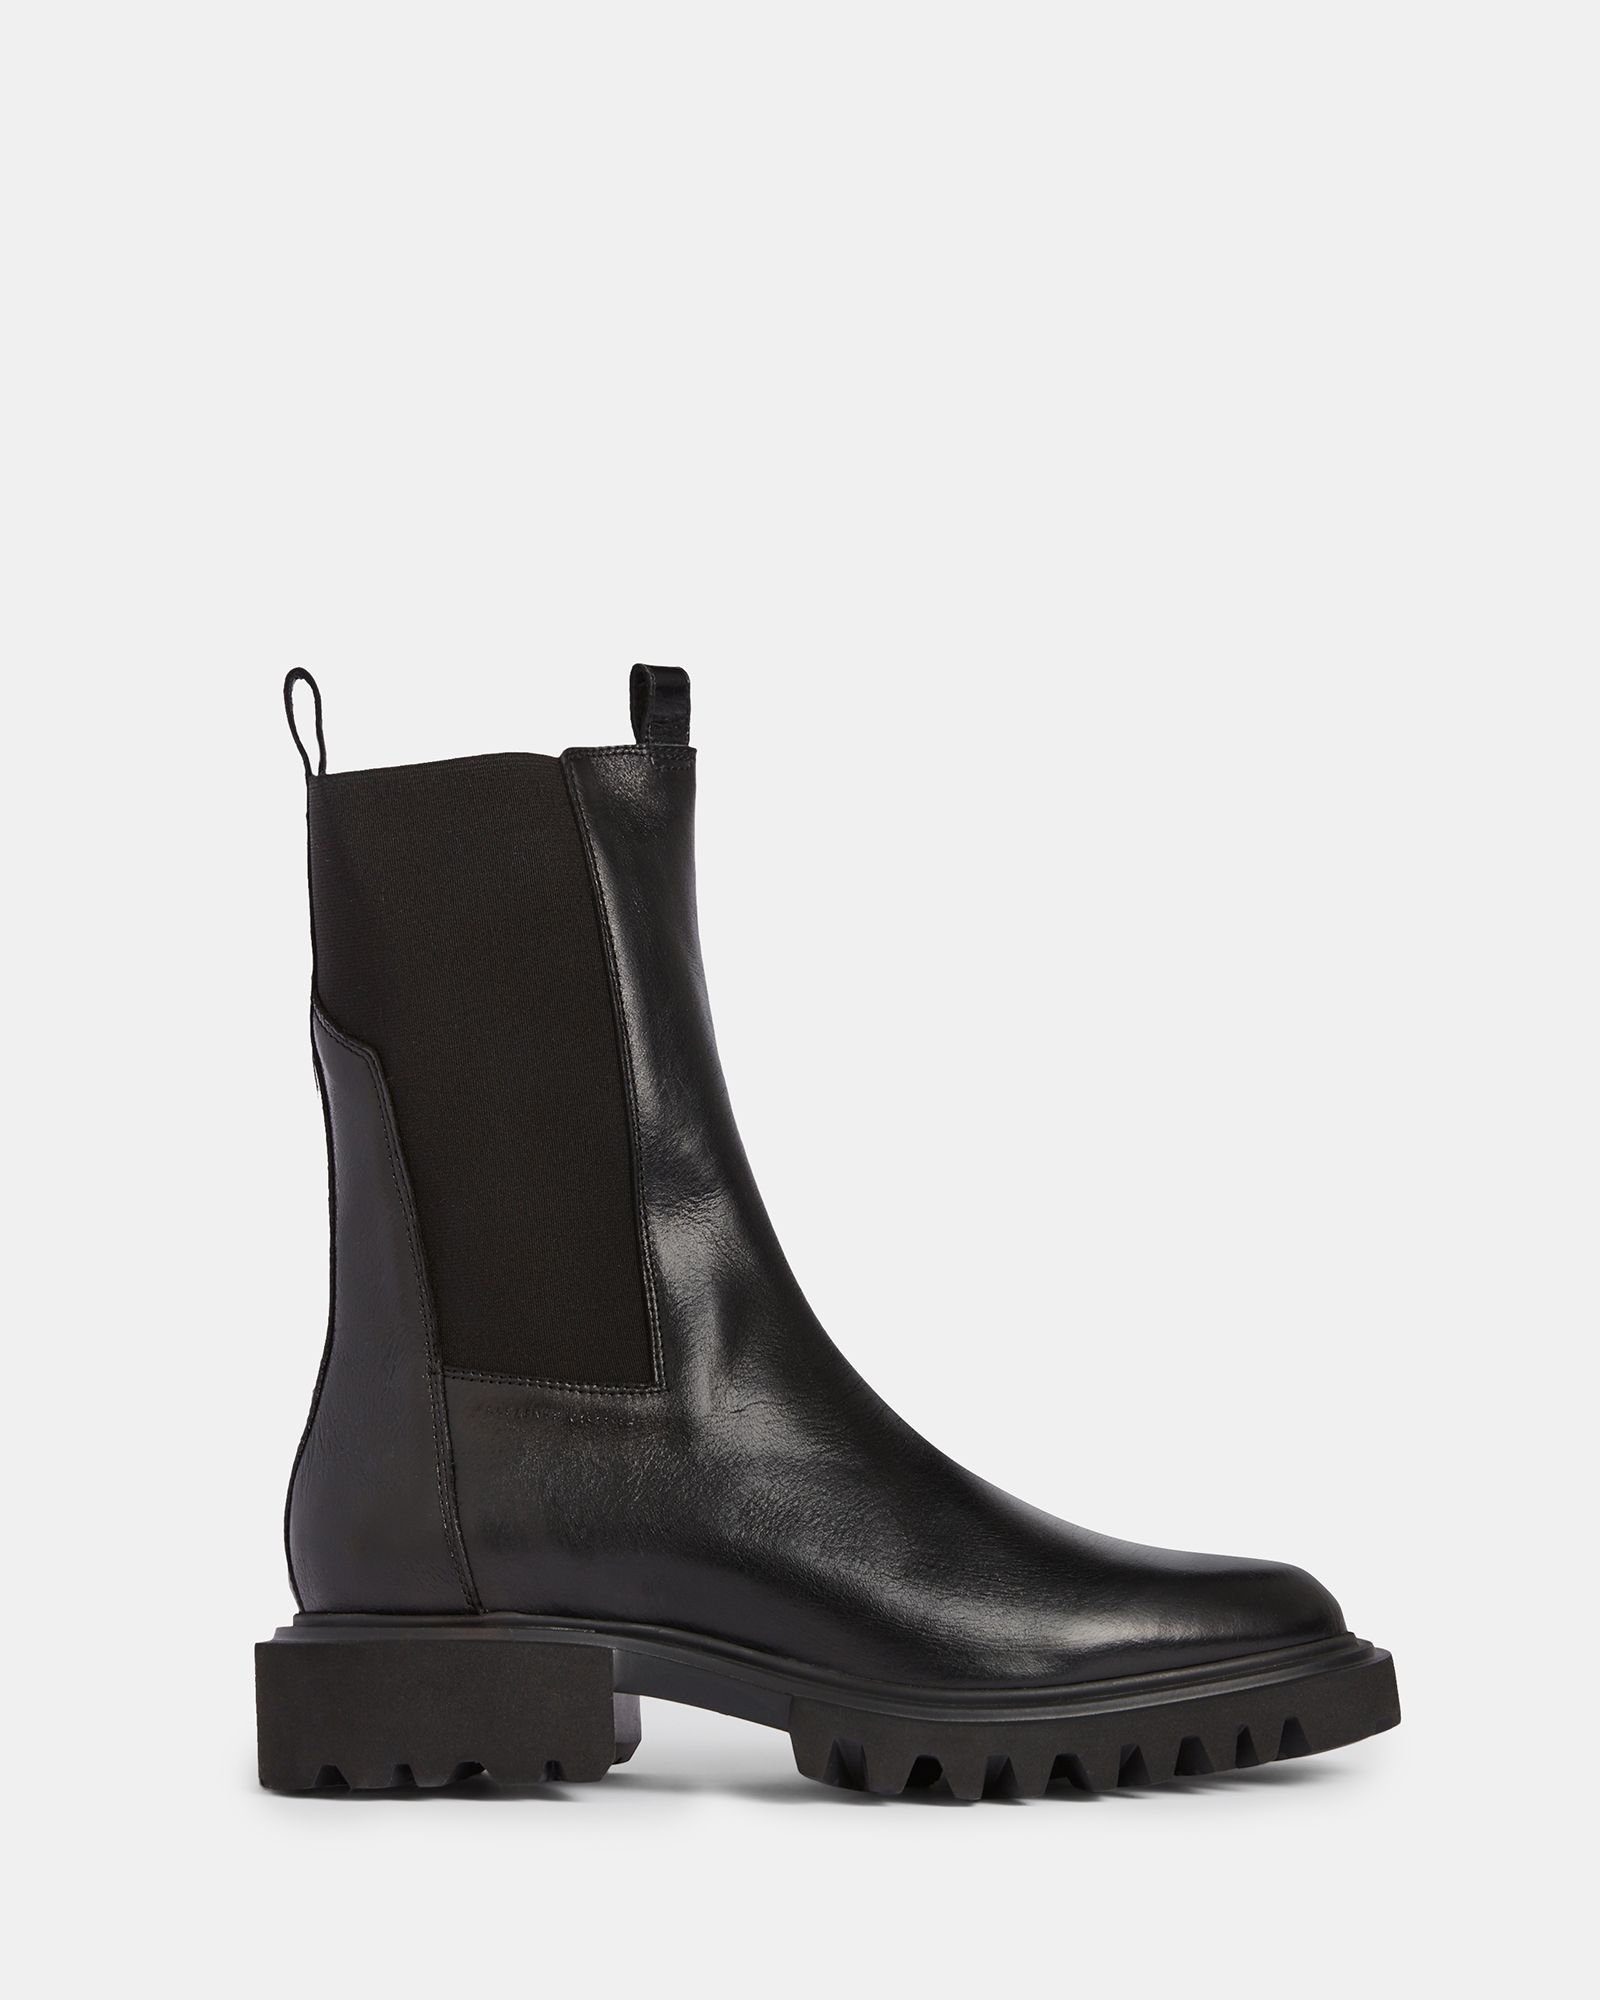 Hallie Leather Boots Black | ALLSAINTS US